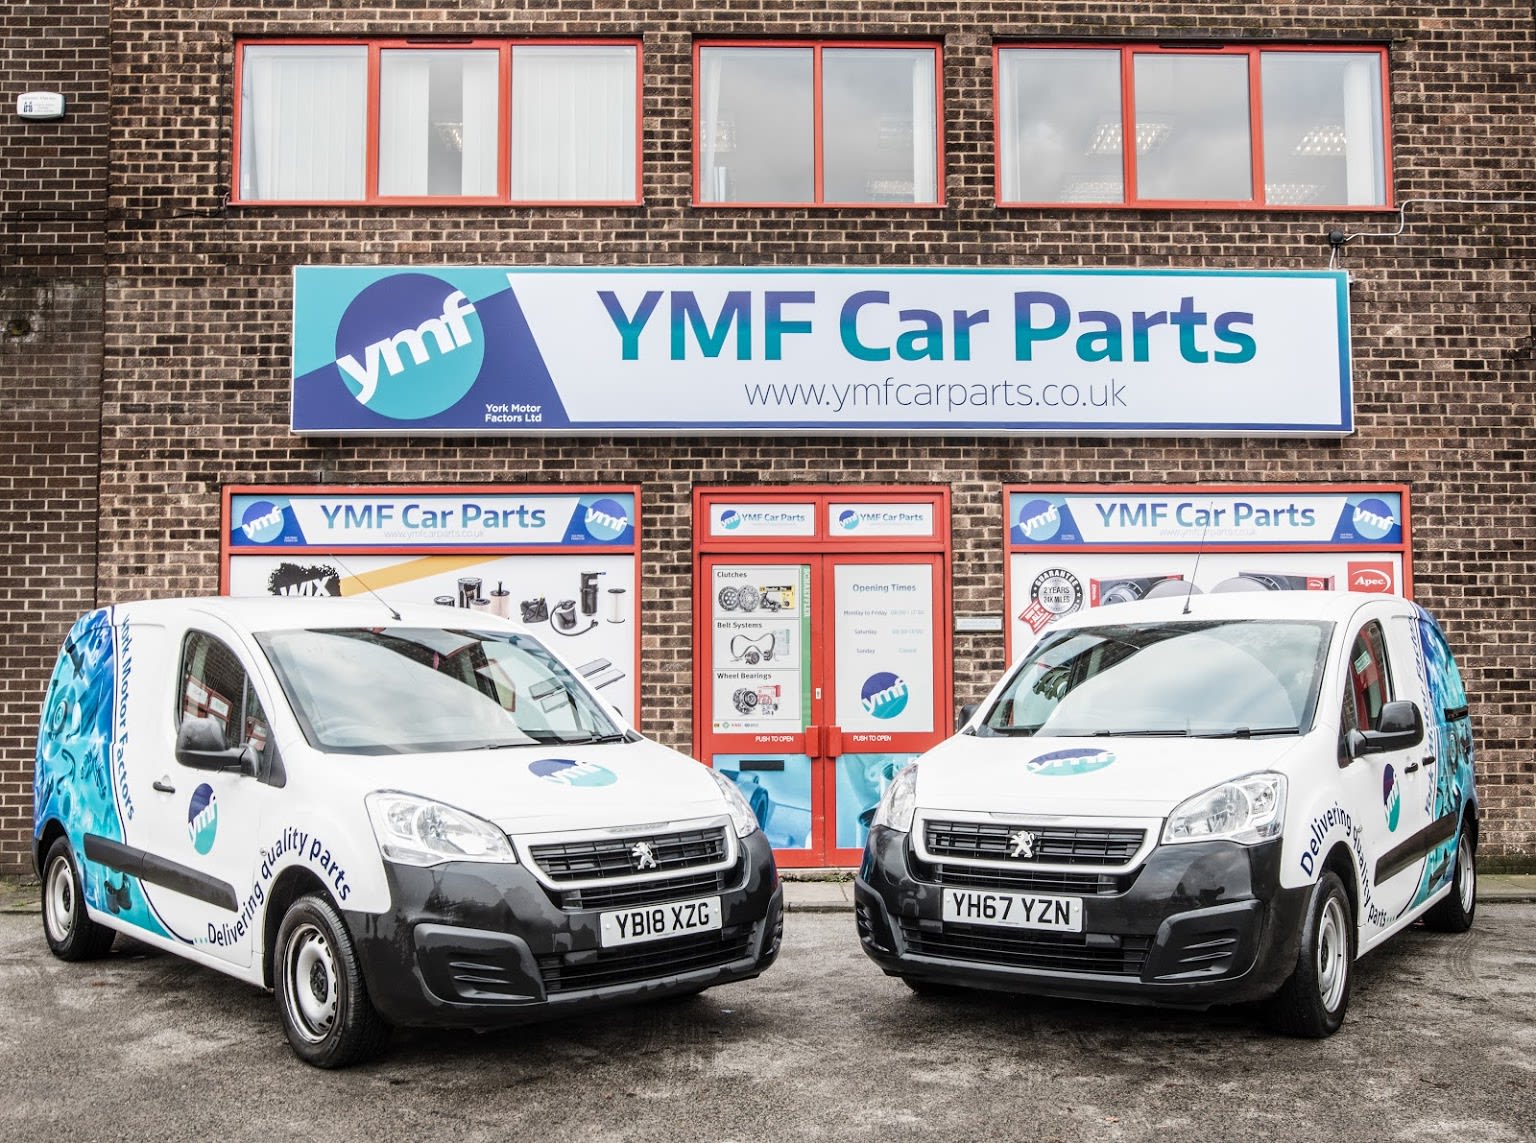 YMF Car Parts York Layerthorpe